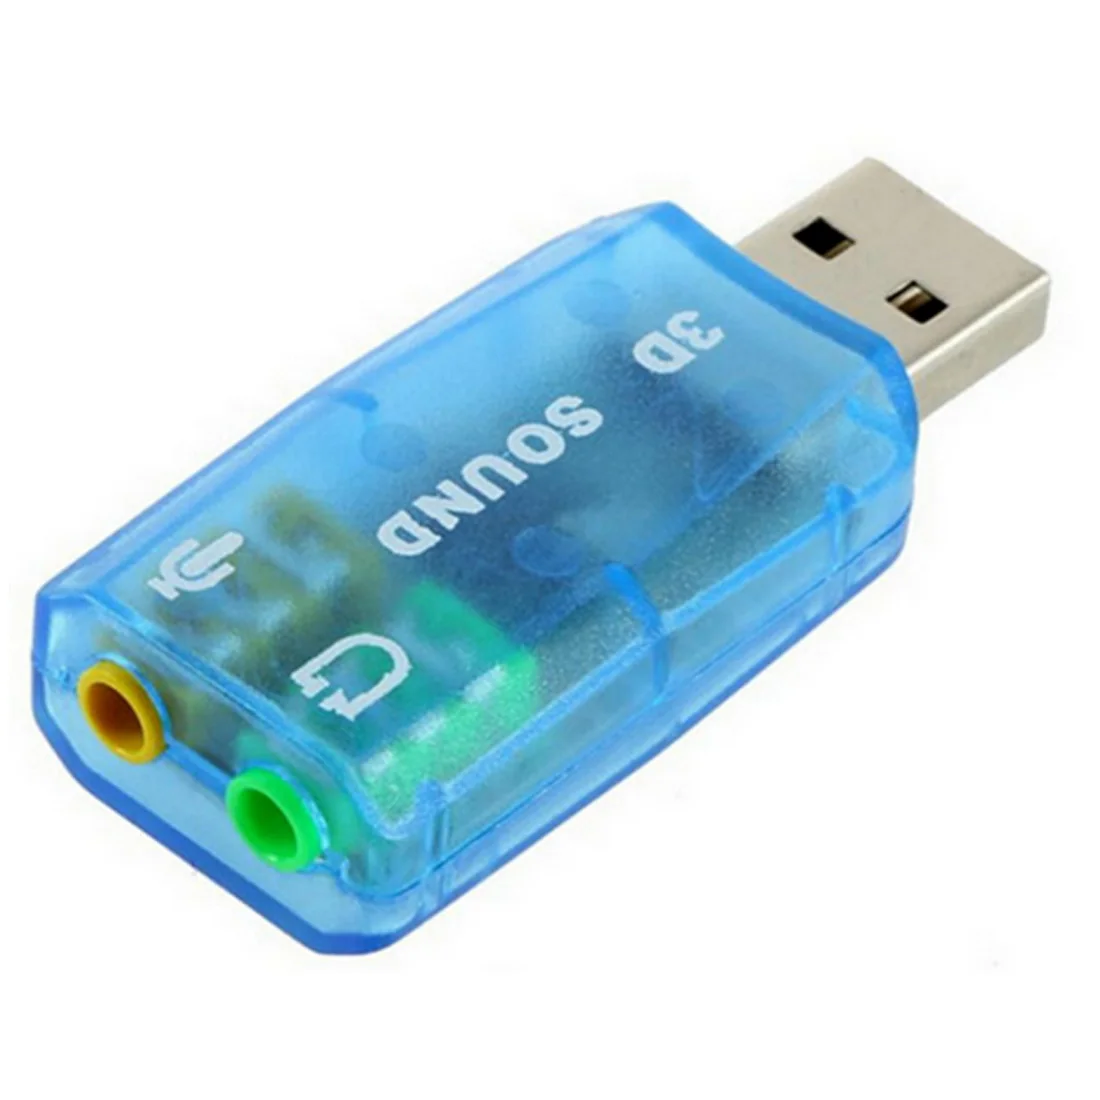 Новая USB звуковая карта внешняя 5,1 каналов w/3,5 мм разъем для наушников и микрофона интерфейс компьютера стерео микрофон аудио USB конвертер - Цвет: Blue